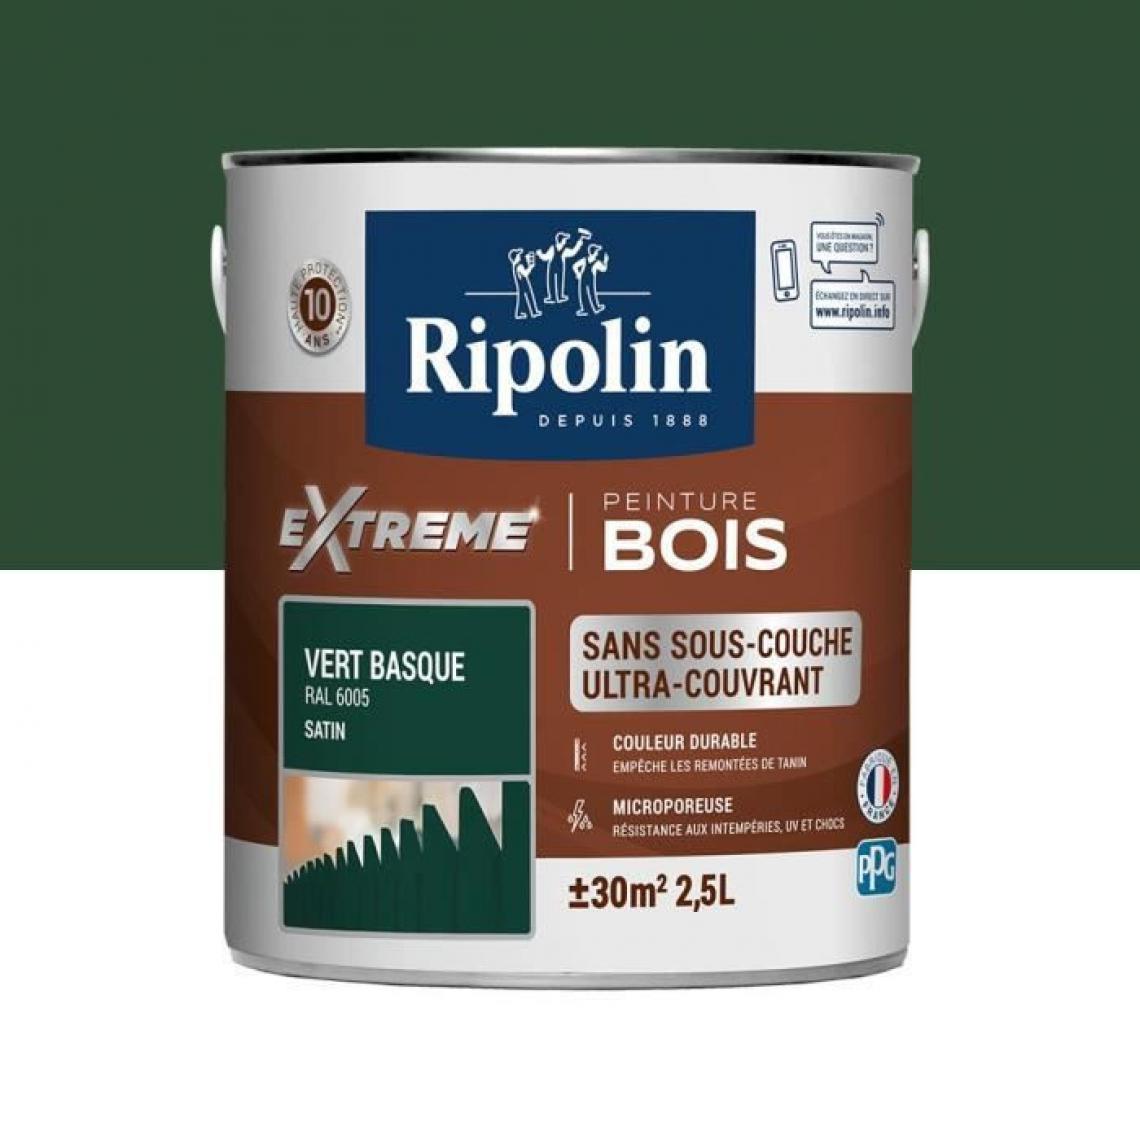 Ripolin - RIPOLIN Peinture pour pour Bois Interieur + Exterieur - Vert Basque Ral 6005 Satin, 2,5L - Peinture intérieure